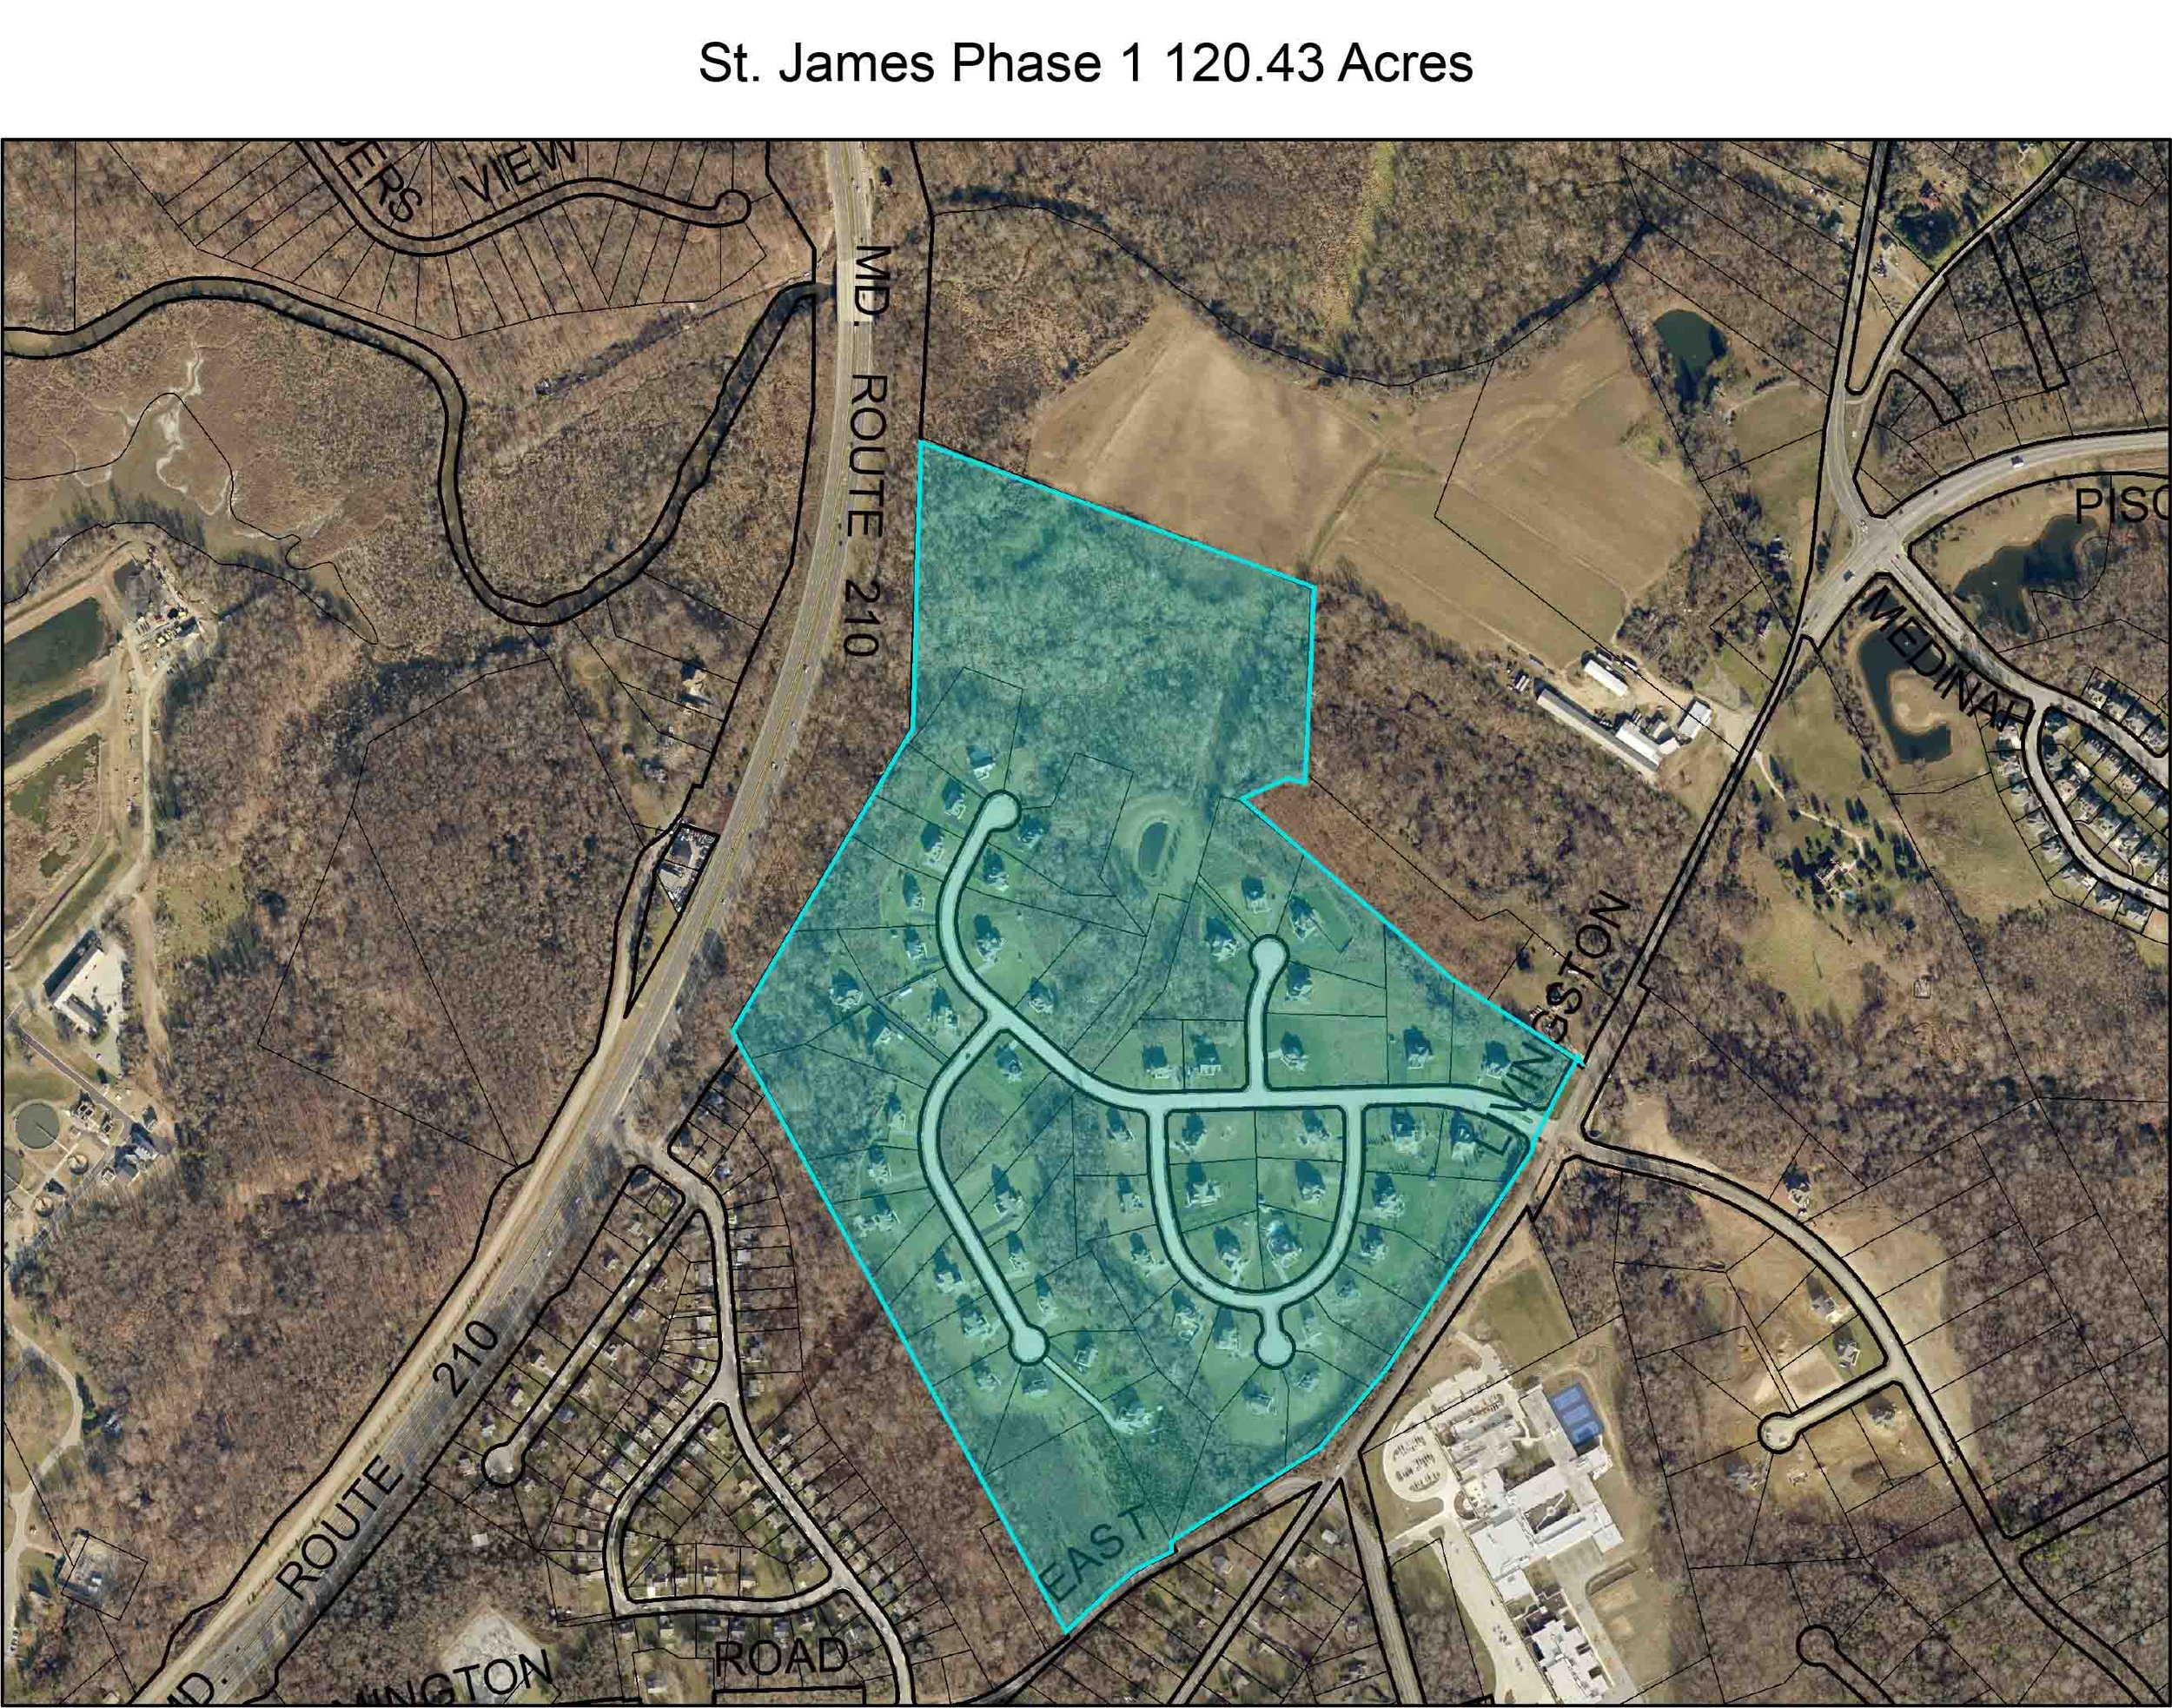 St. james Phase 1 Aerial Overlay.jpg